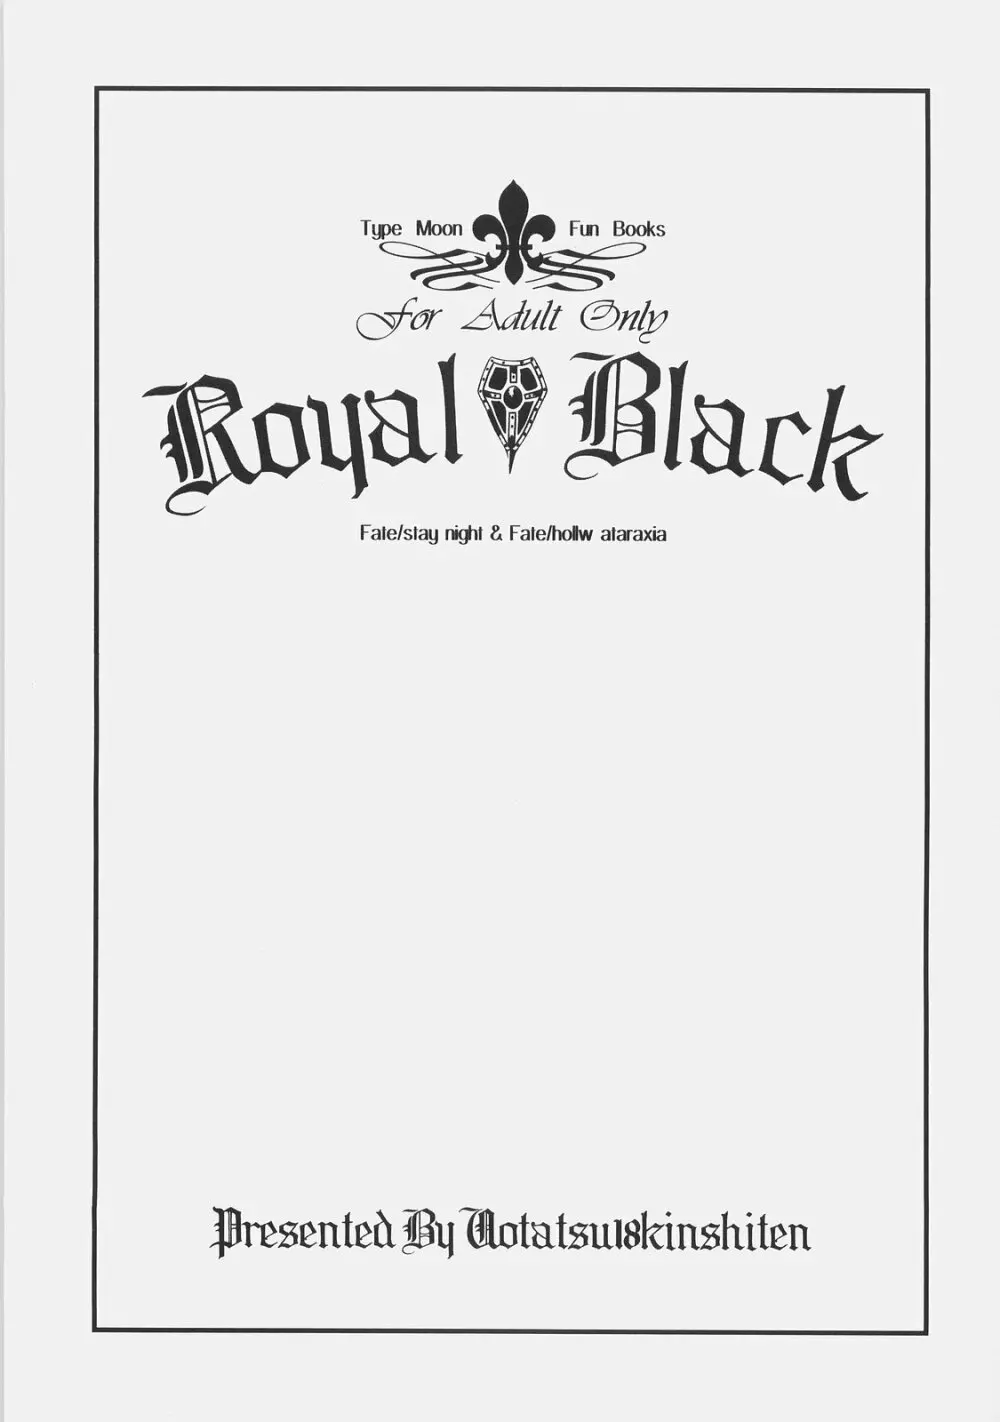 Royal Black - page2